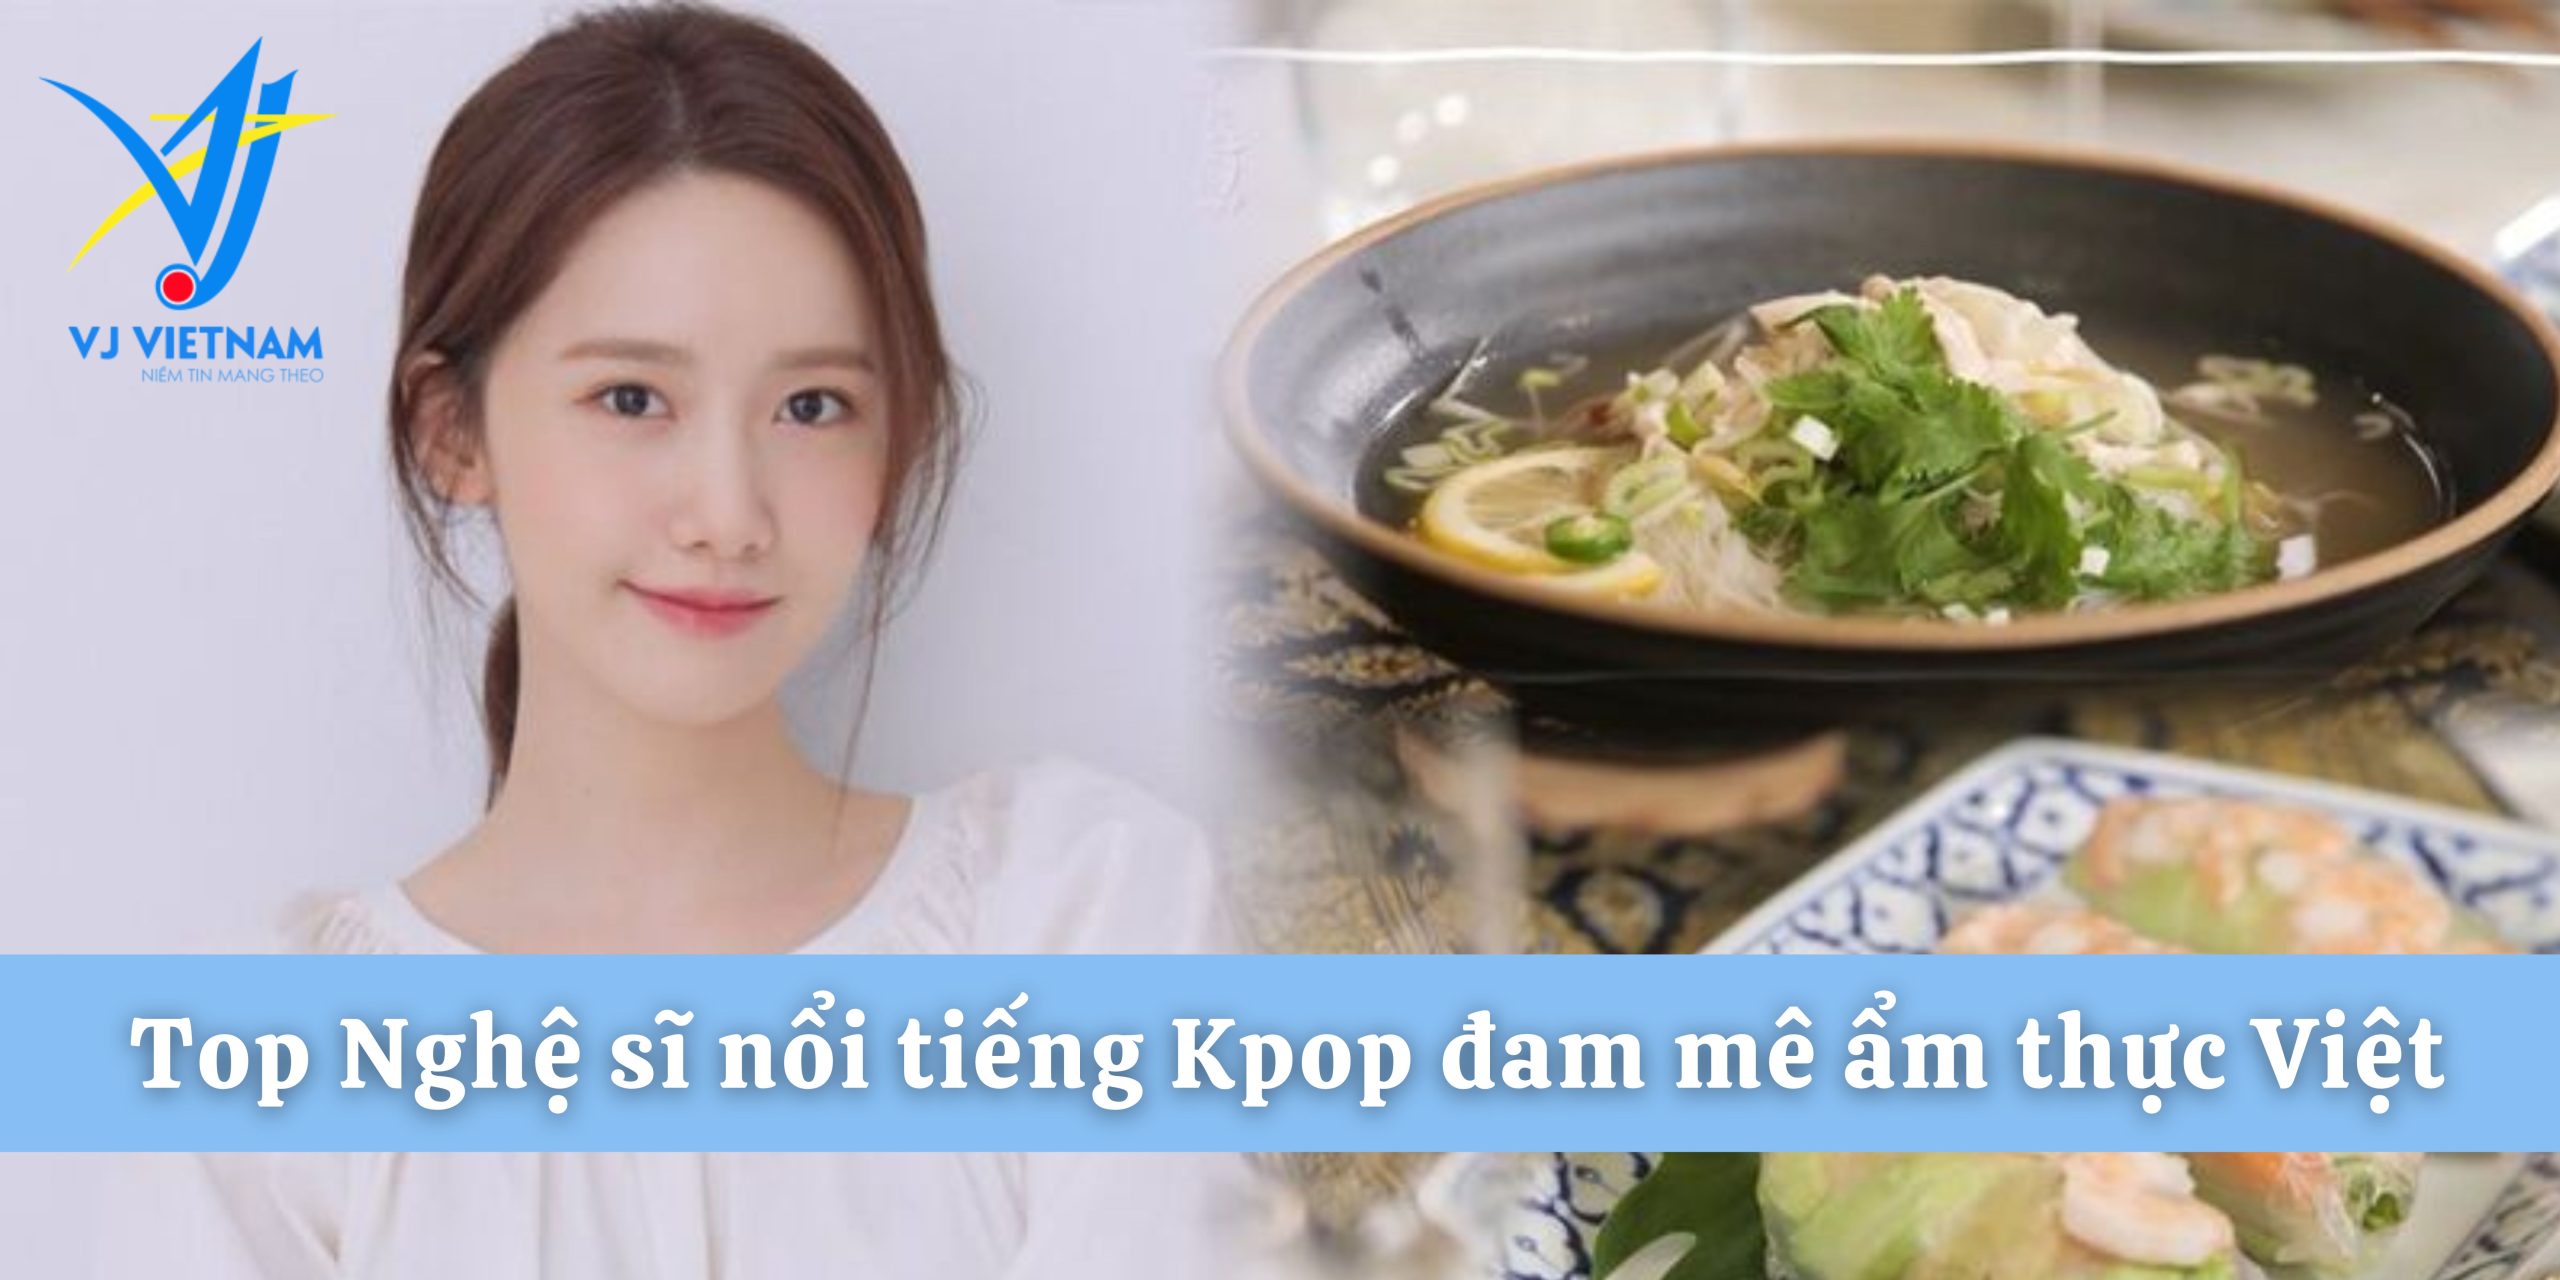 Nghệ sĩ Kpop đam mê ẩm thực Việt Nam